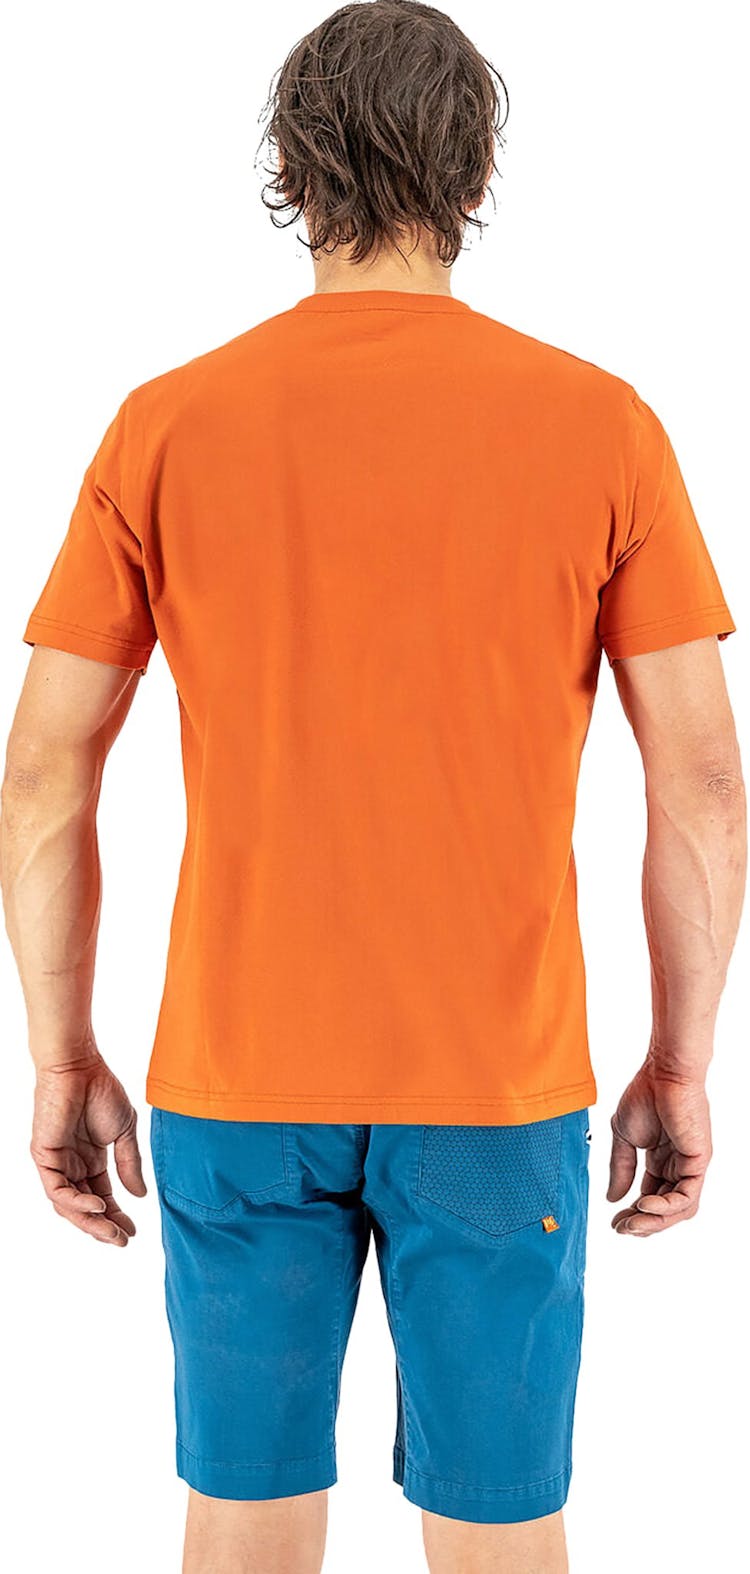 Numéro de l'image de la galerie de produits 3 pour le produit T-Shirt Genzianella - Homme